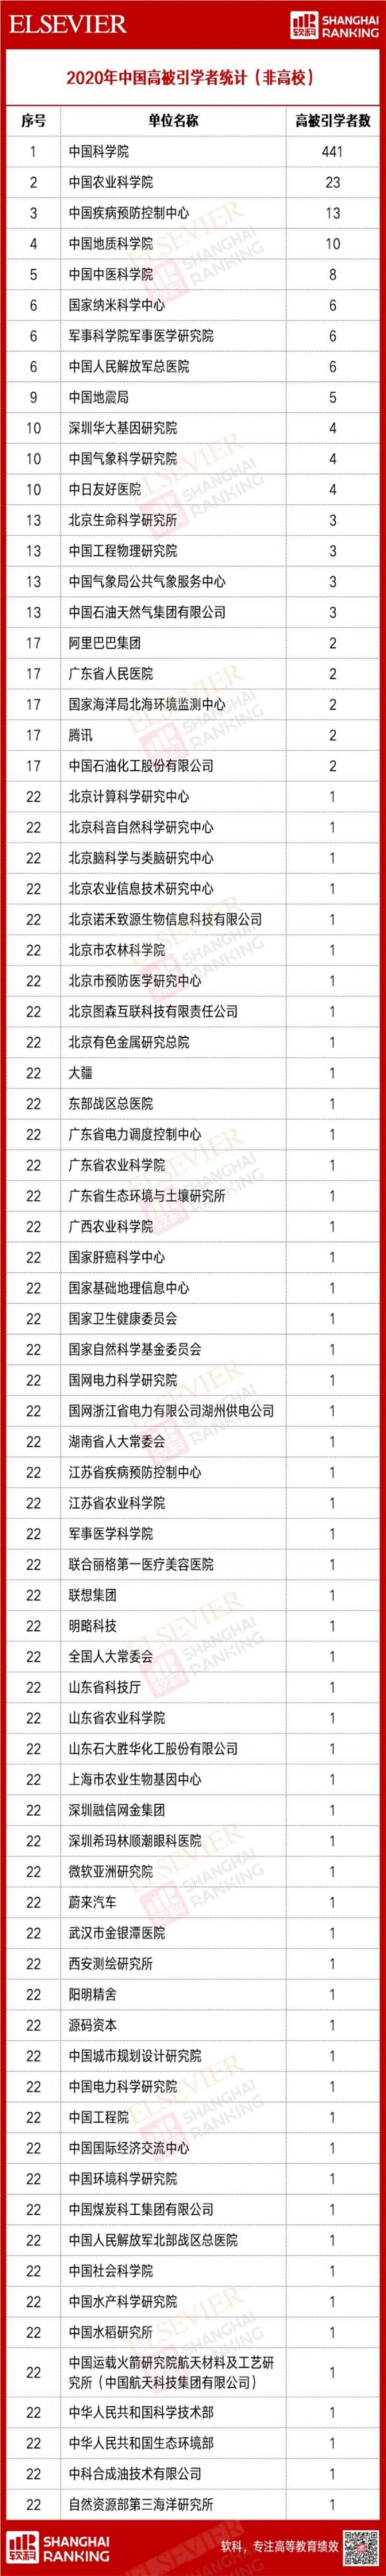 2020年中国高被引学者榜单出炉：中山大学插进“华五” 阿里腾讯榜上有名